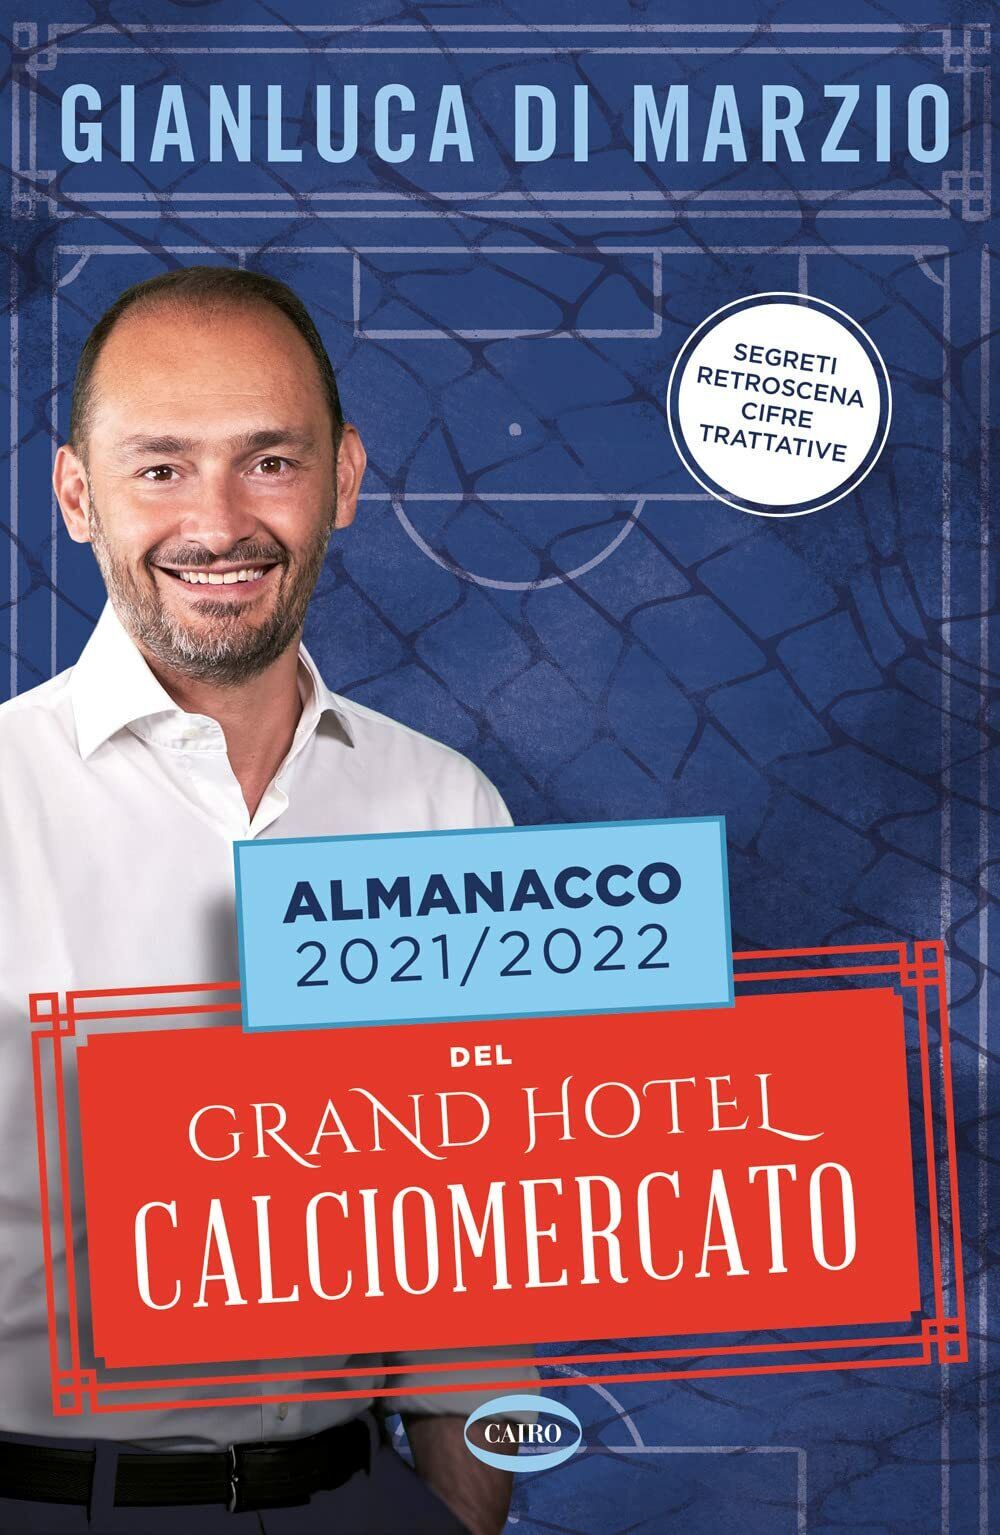 Almanacco 2021-2022 del Grand hotel calciomercato - Gianluca Di Marzio, 2021 libro usato